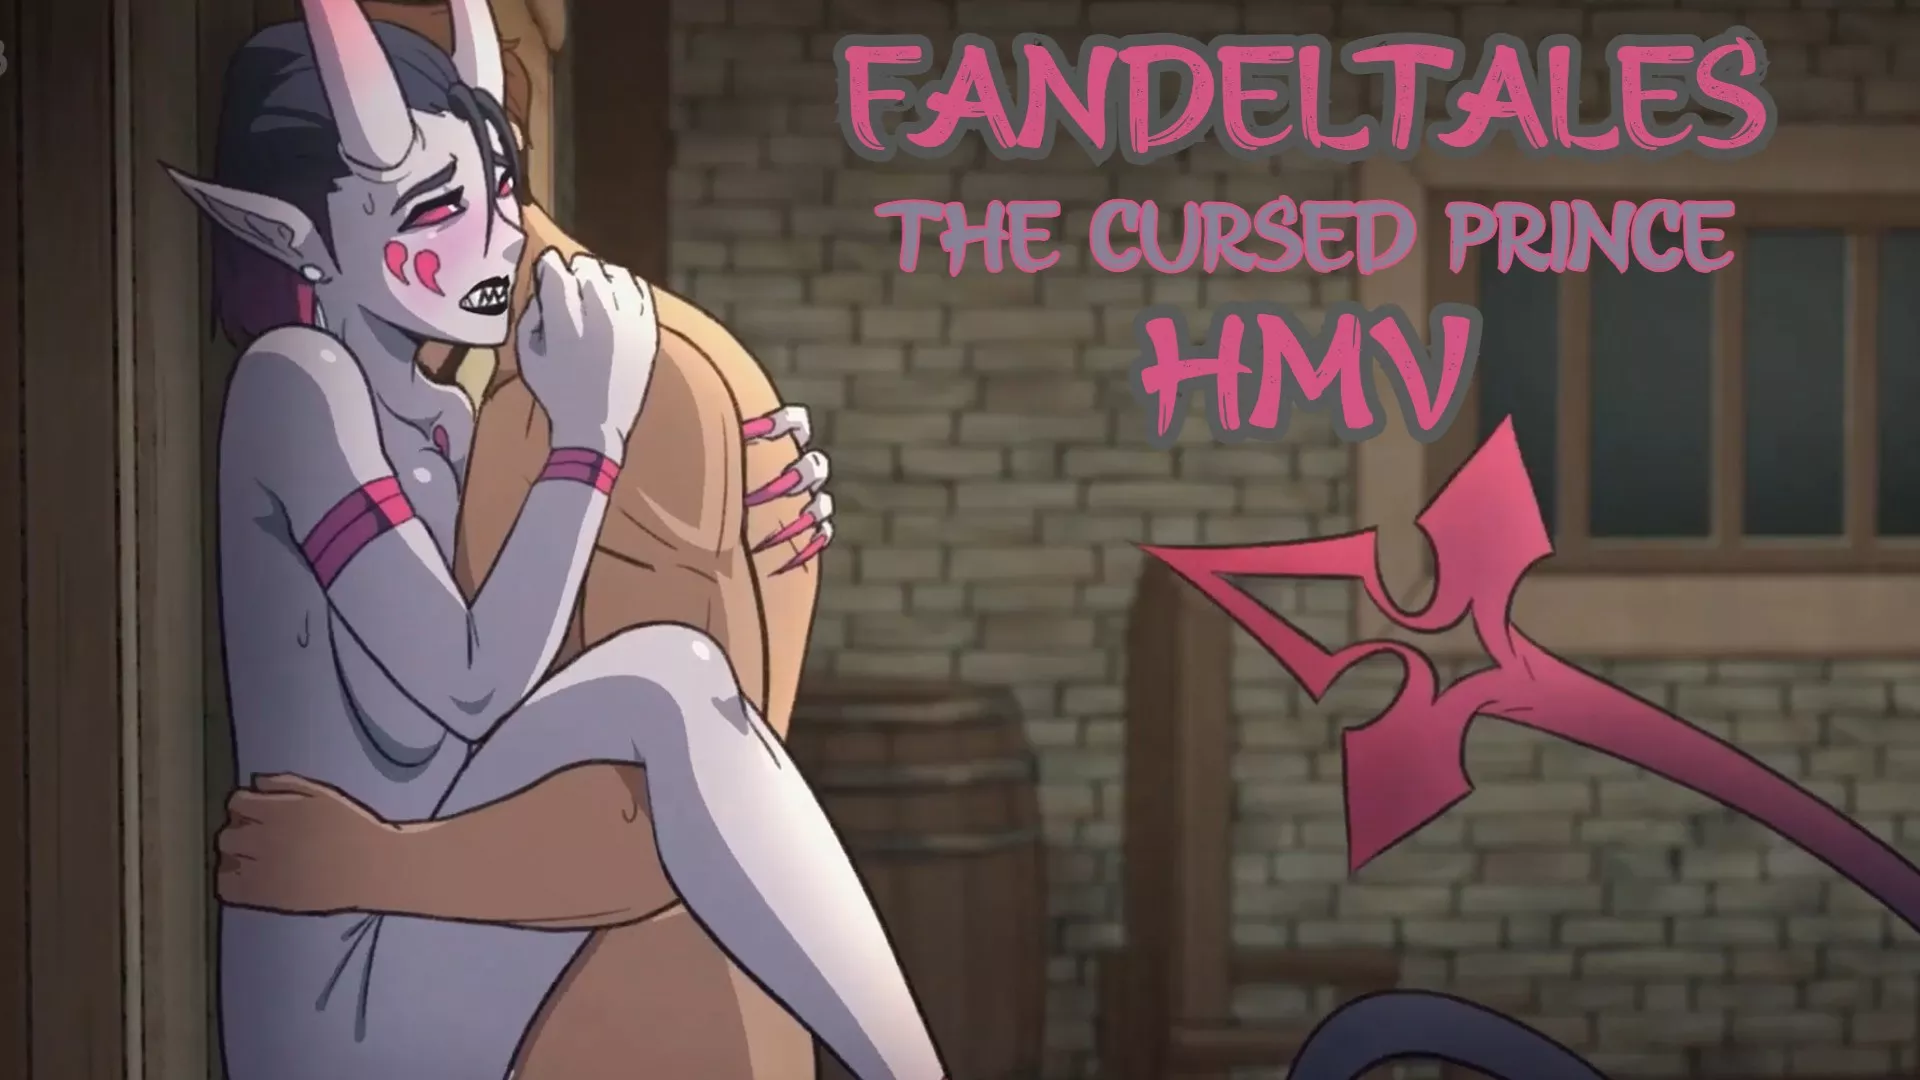 Cursed prince fandel tales